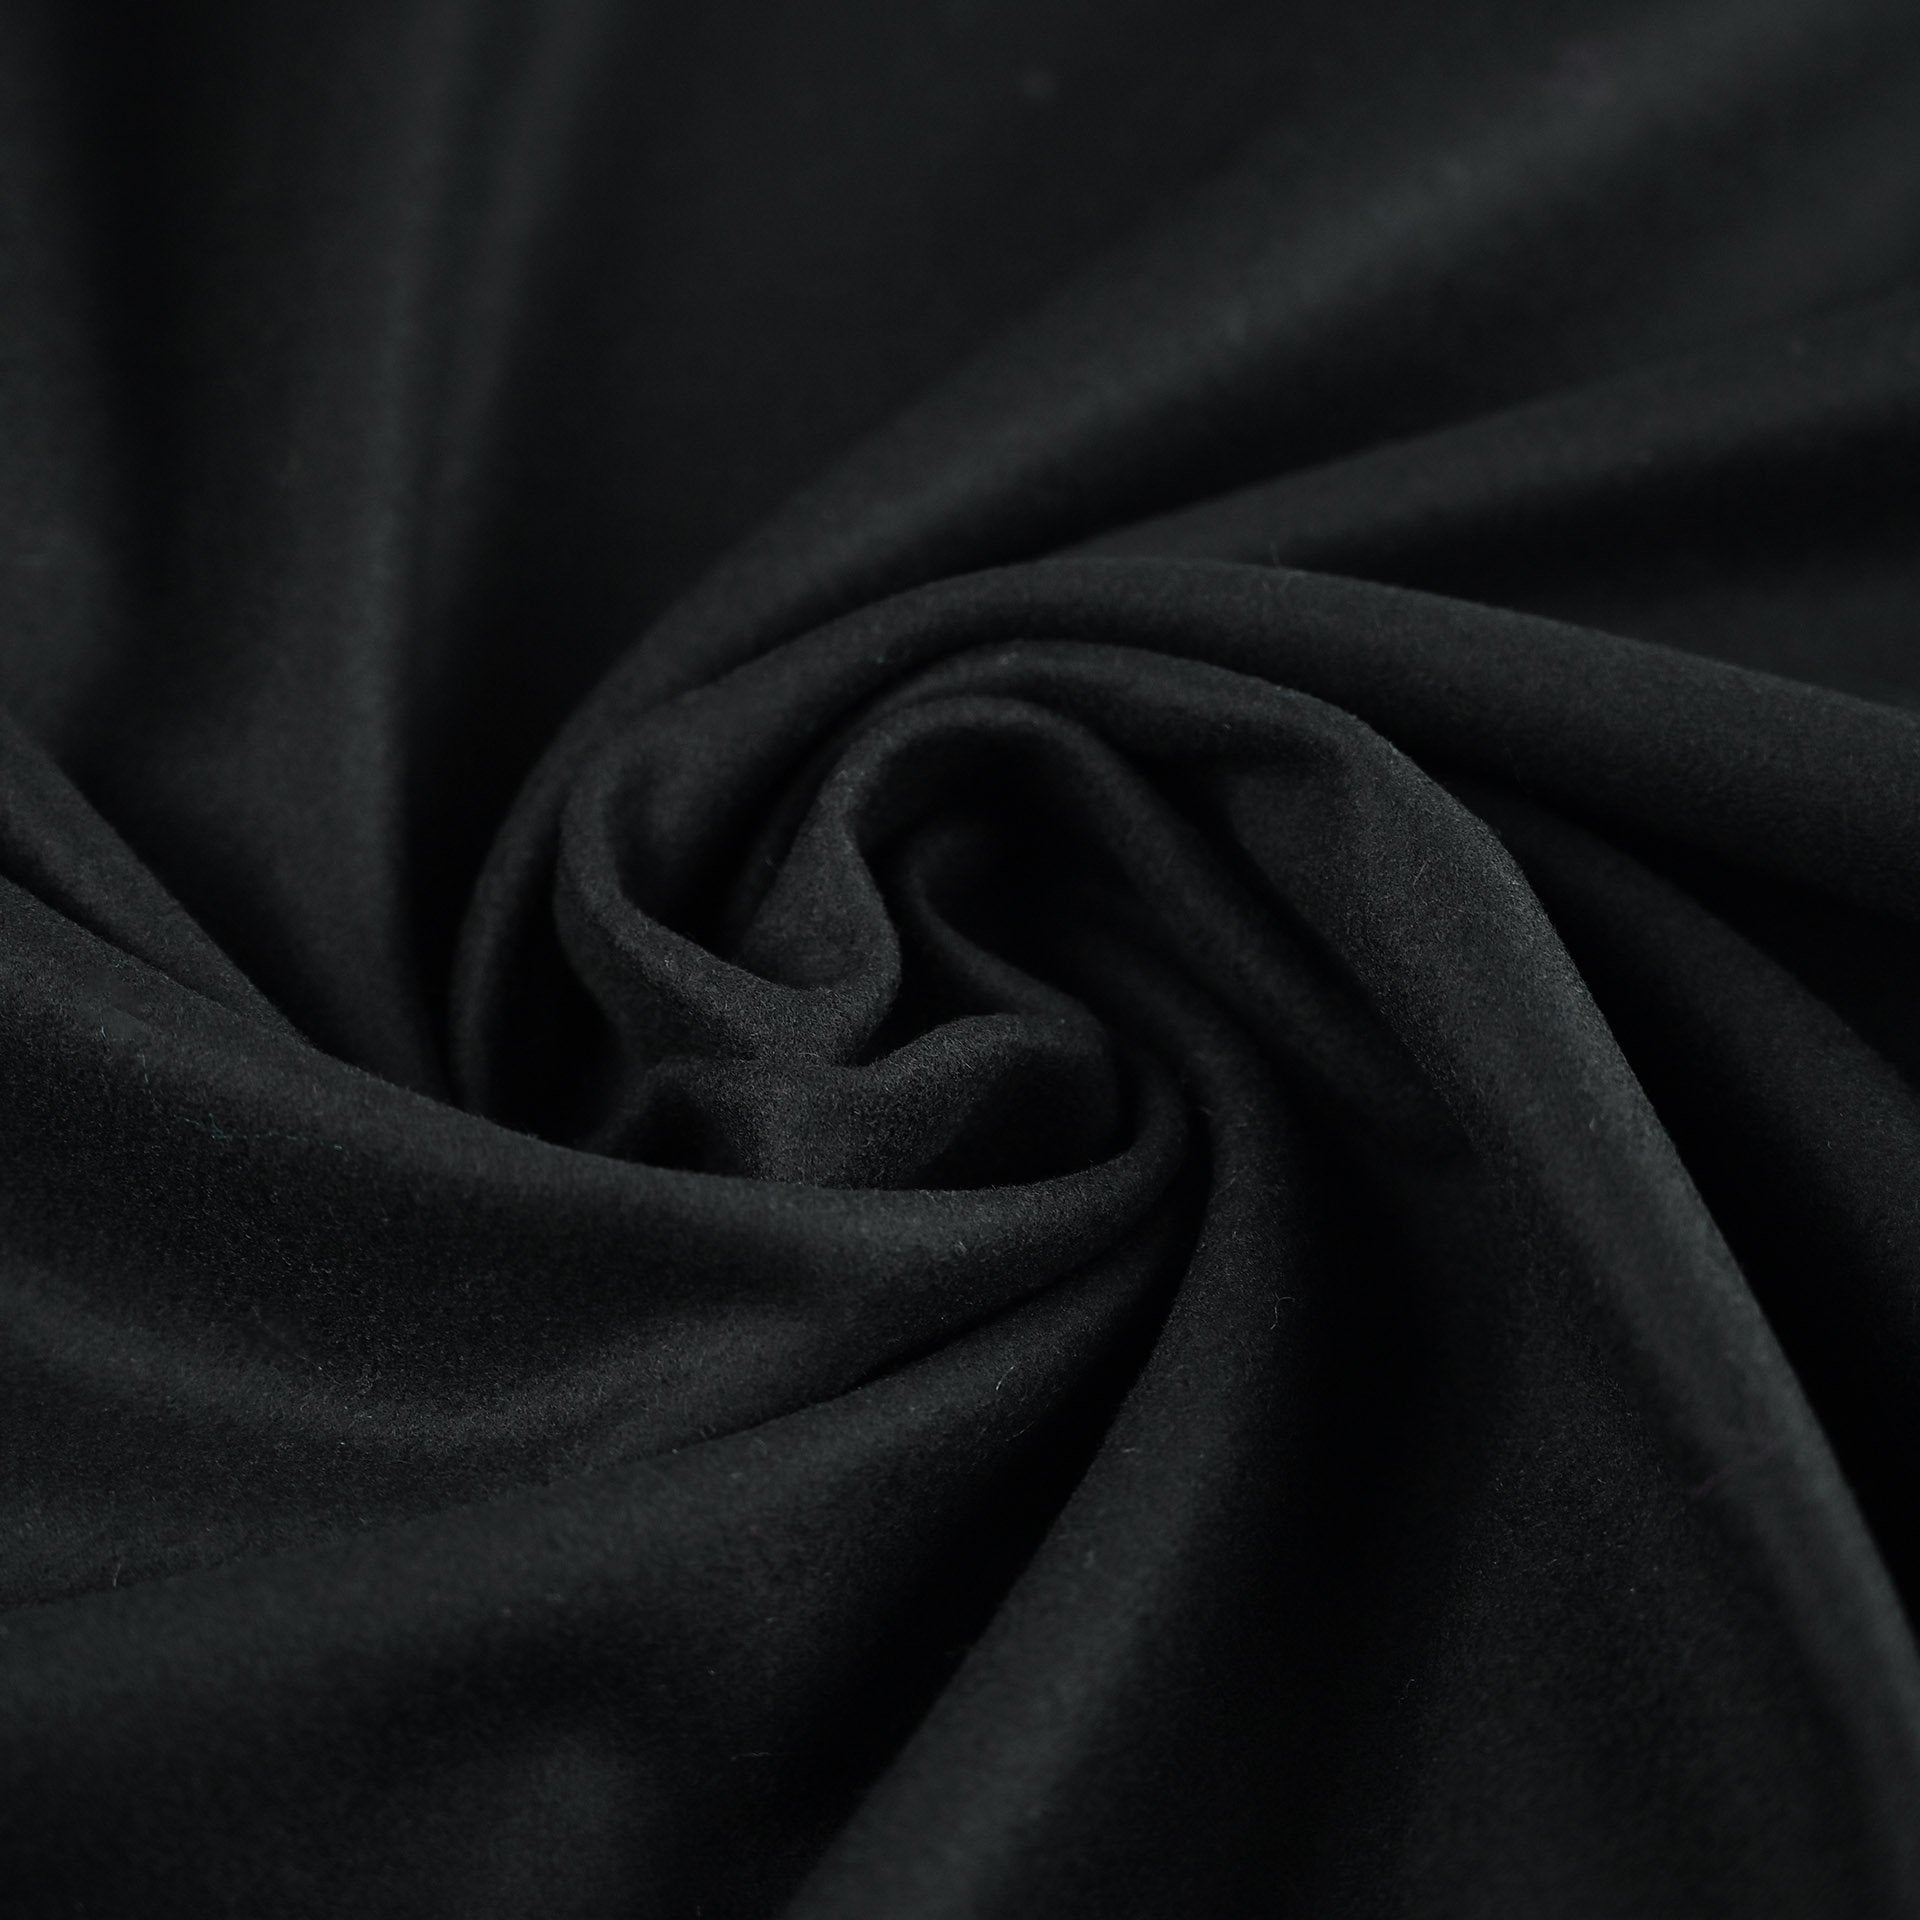 Black Coating Fabric